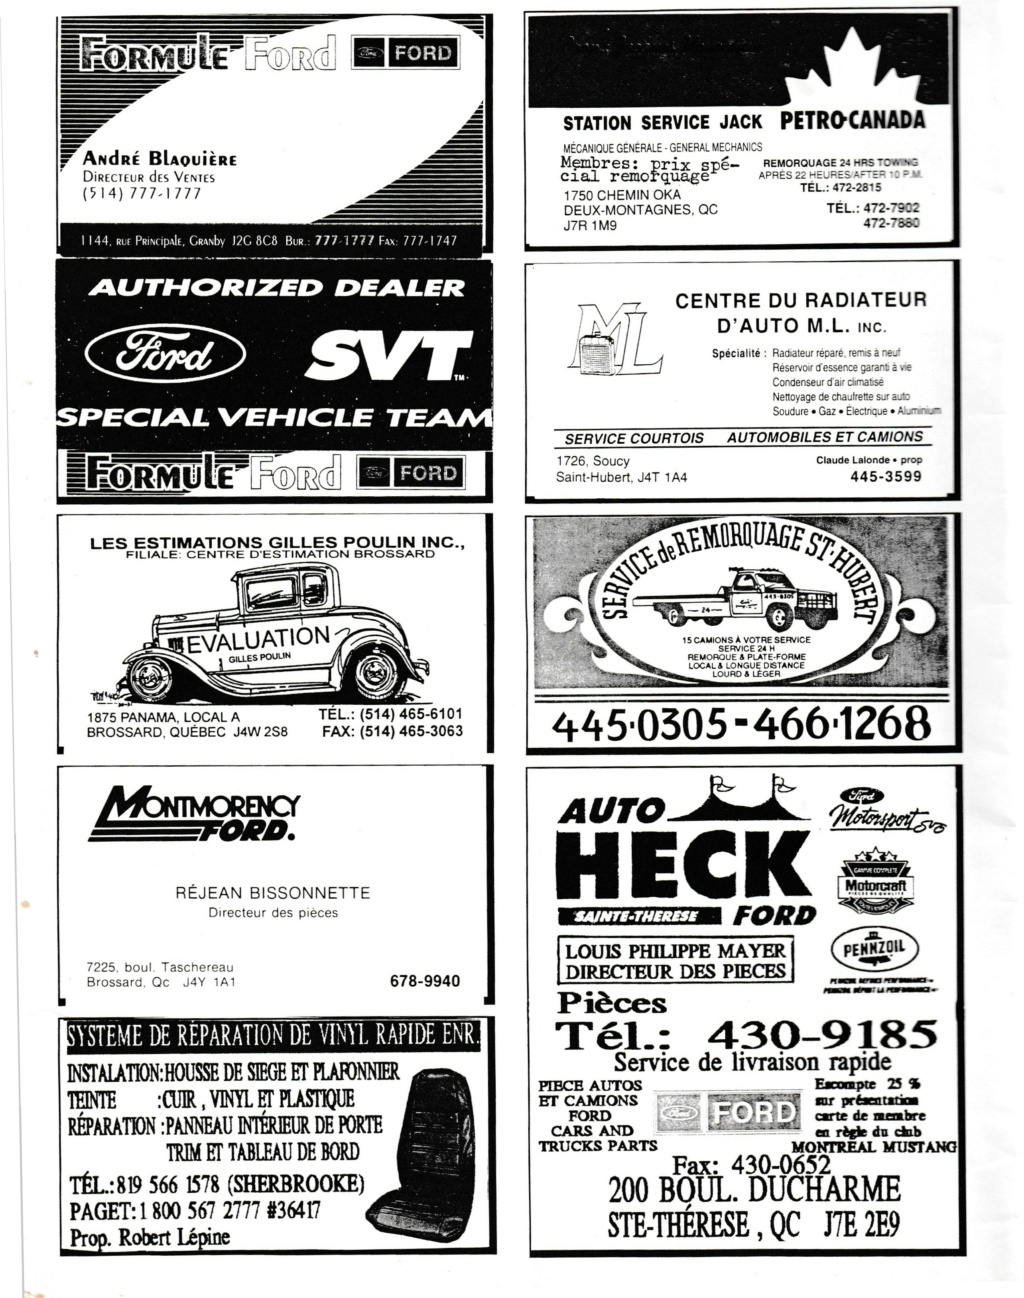 Montréal Mustang dans le temps! 1981 à aujourd'hui (Histoire en photos) - Page 8 Img_2409